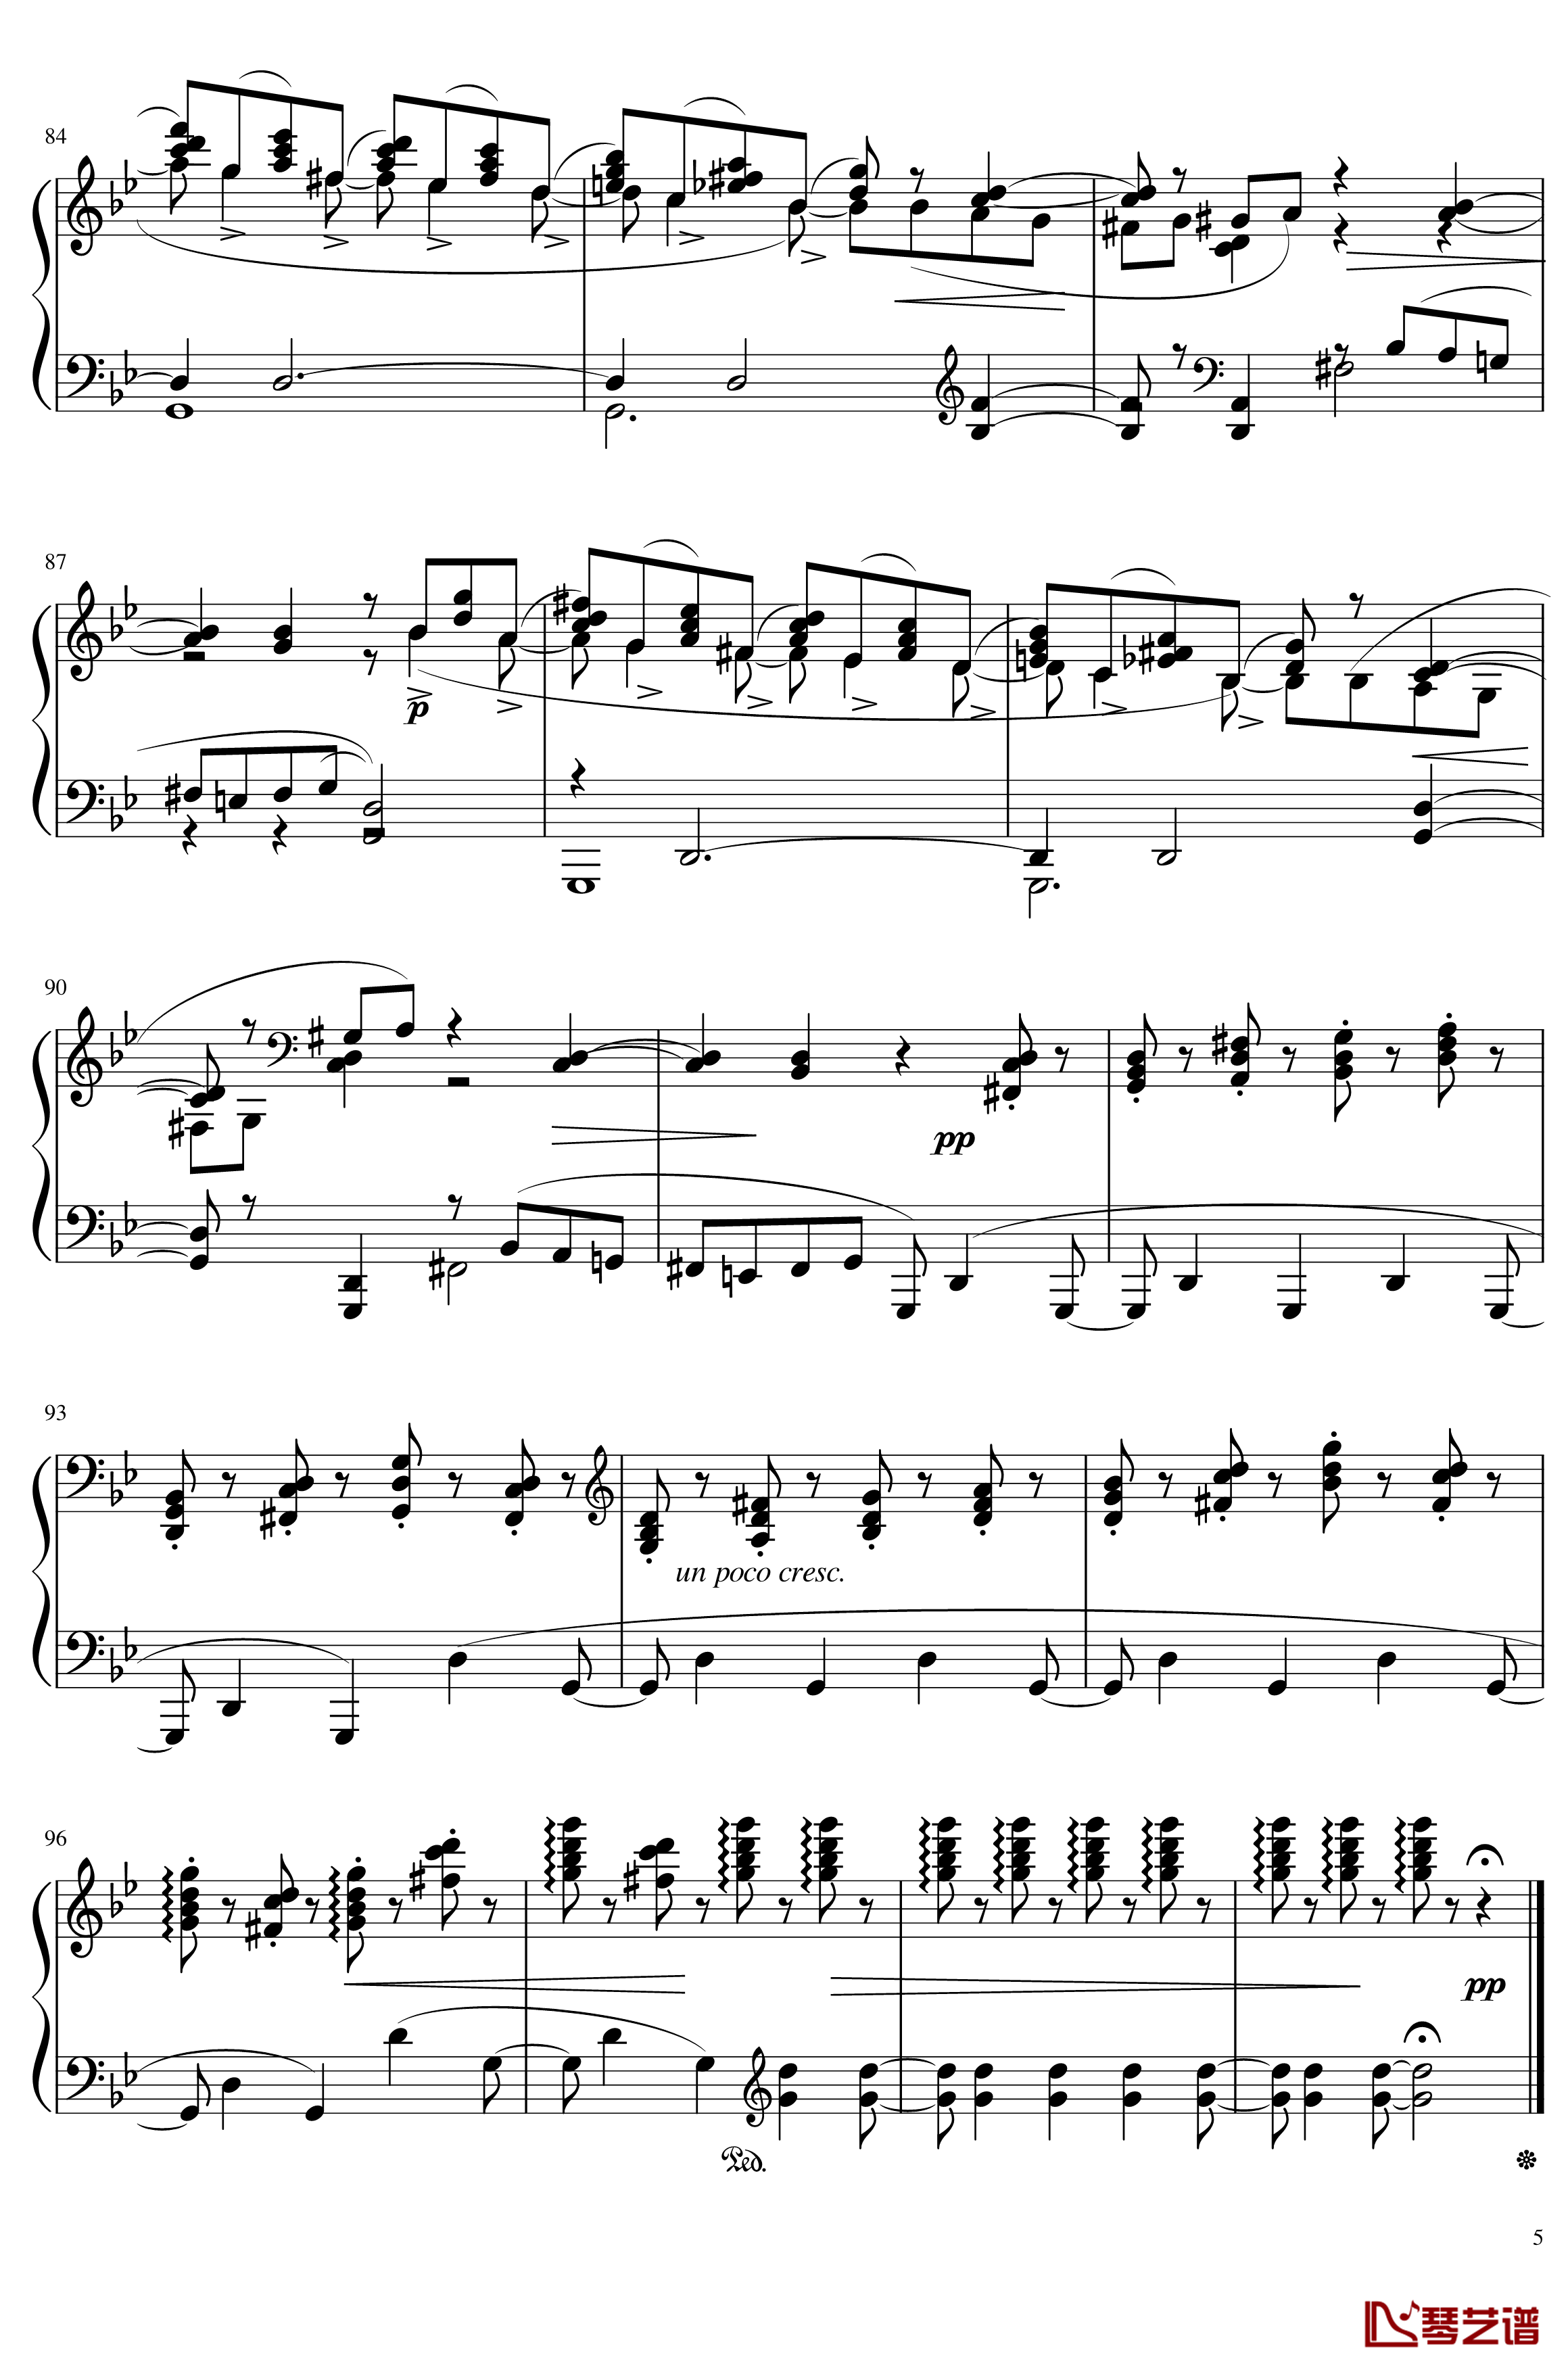 六月钢琴谱 船歌-The seasons,June: Barcarolle-柴科夫斯基-Peter Ilyich Tchaikovsky5